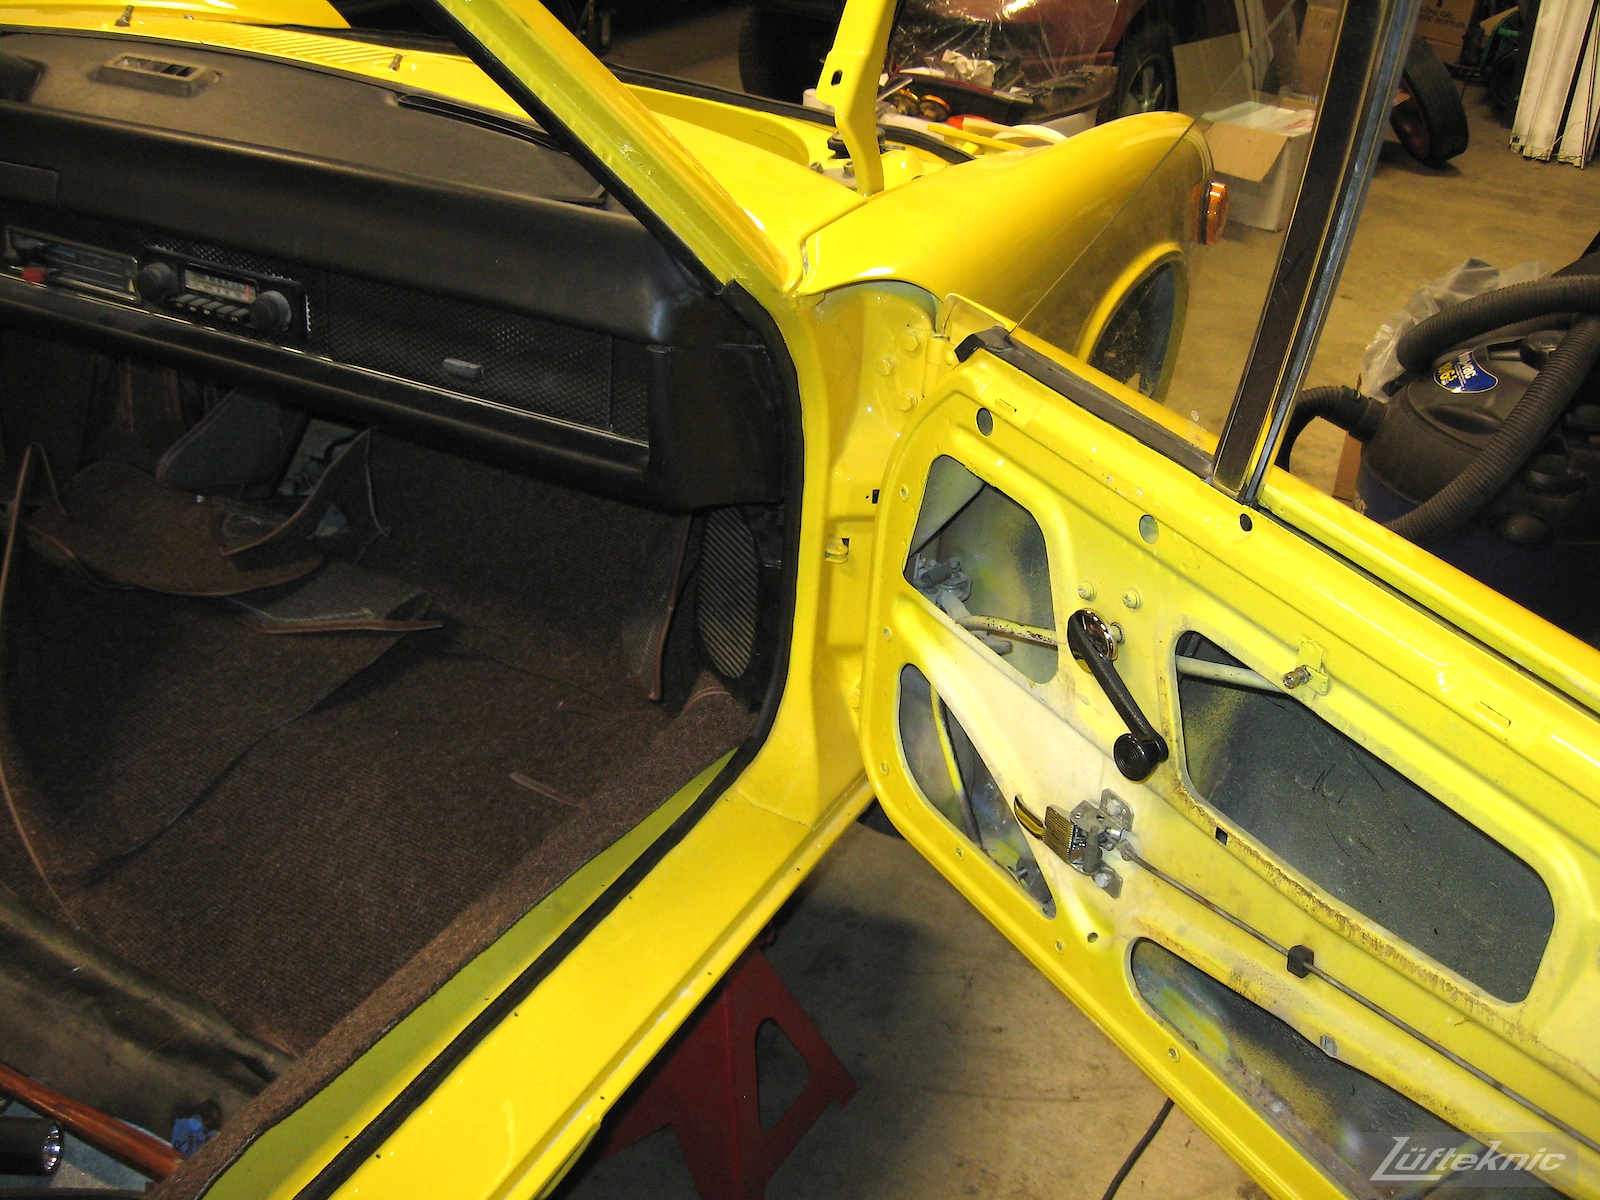 Door trim detail on a Porsche 914 being restored.